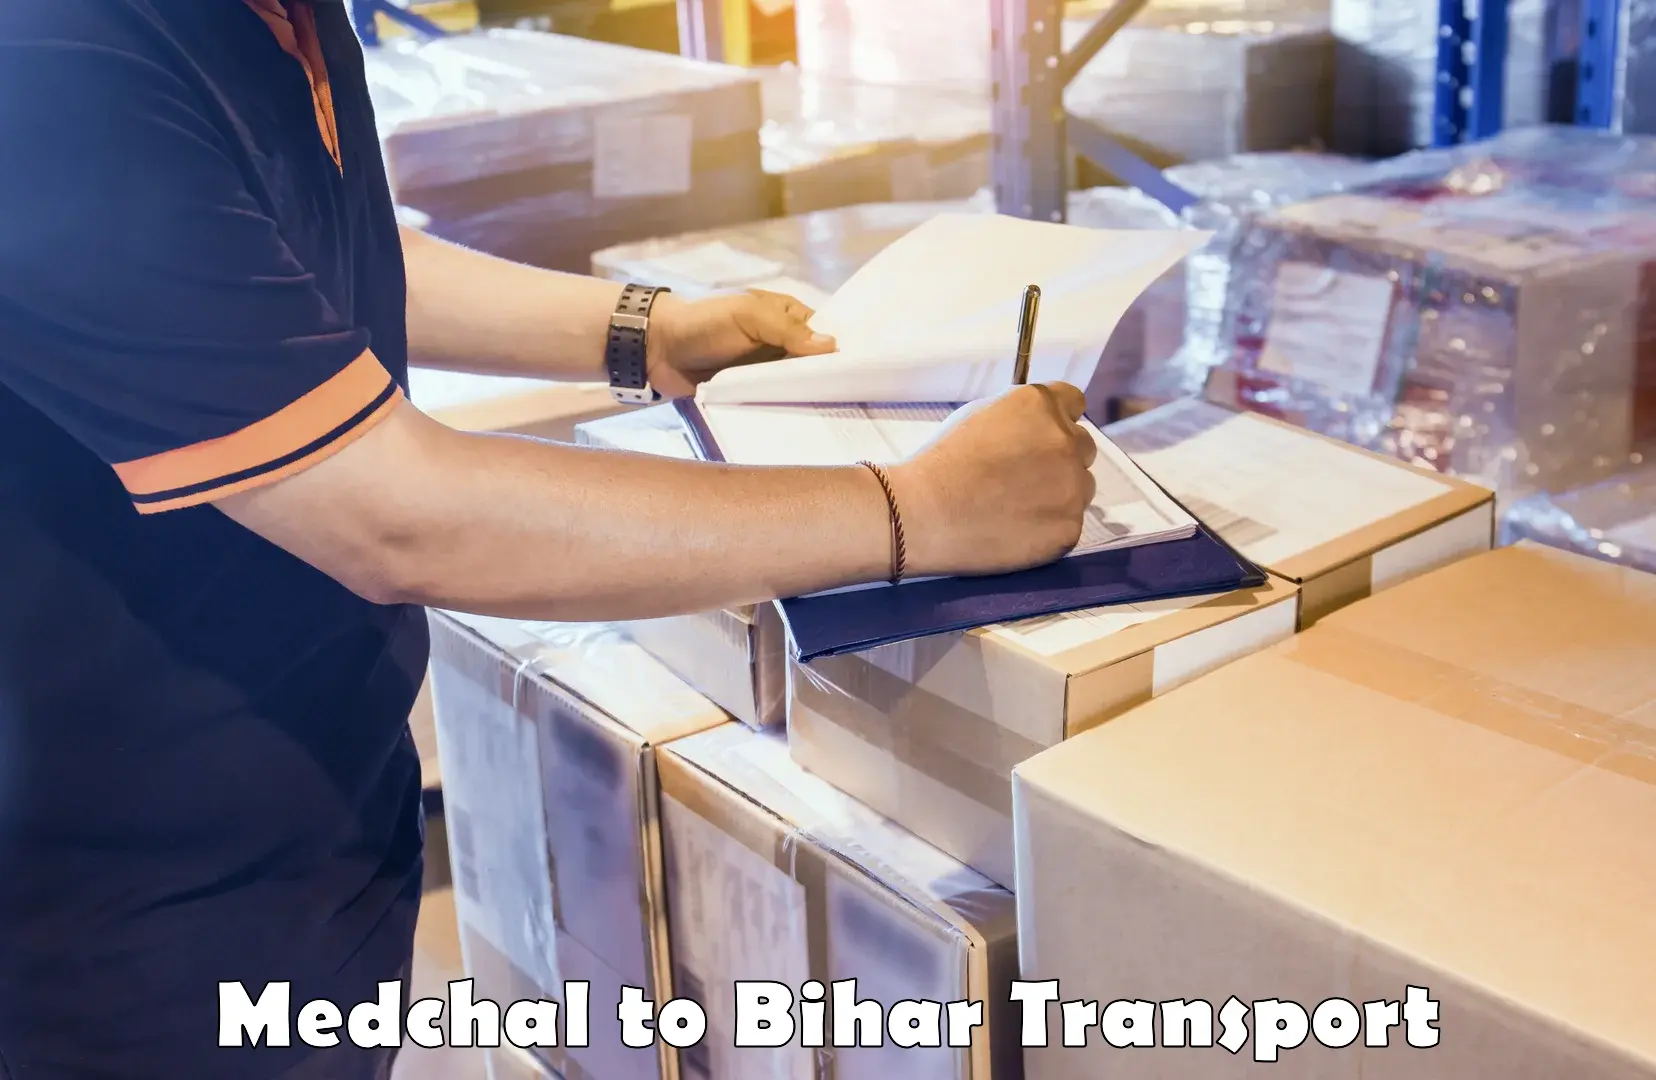 Pick up transport service Medchal to Sheohar